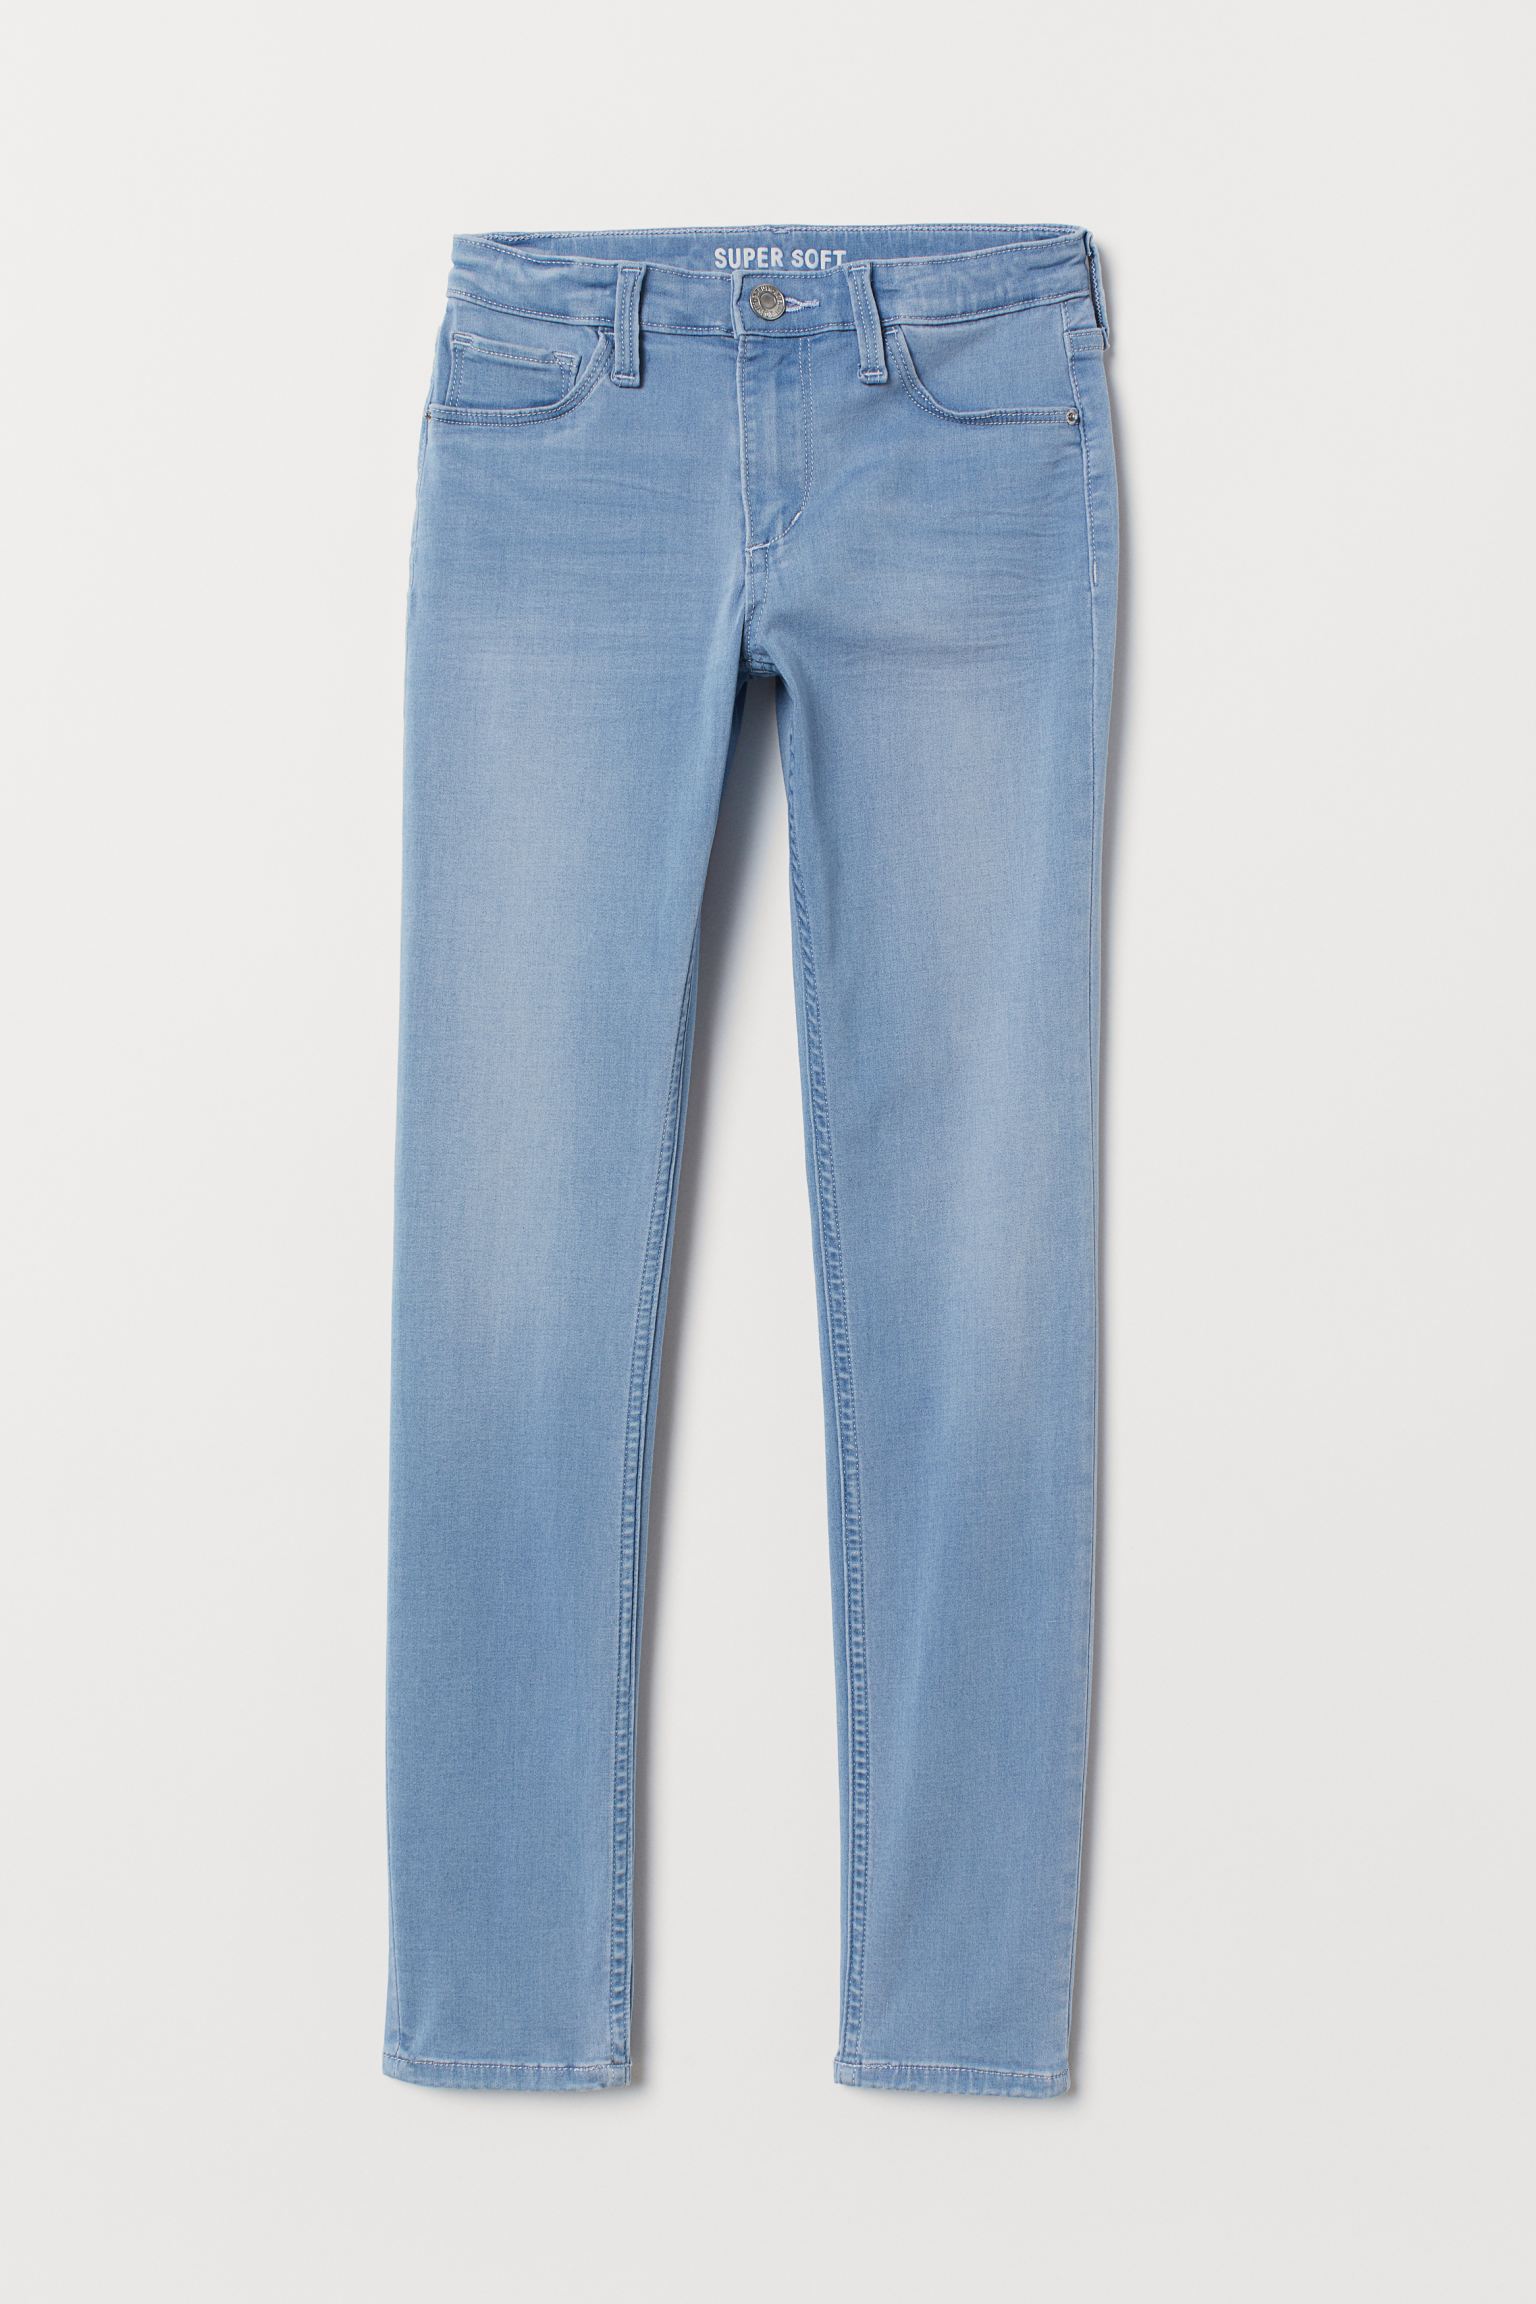 شلوار جینز 38995 سایز 8 تا 14 سال کد 1 مارک H&M